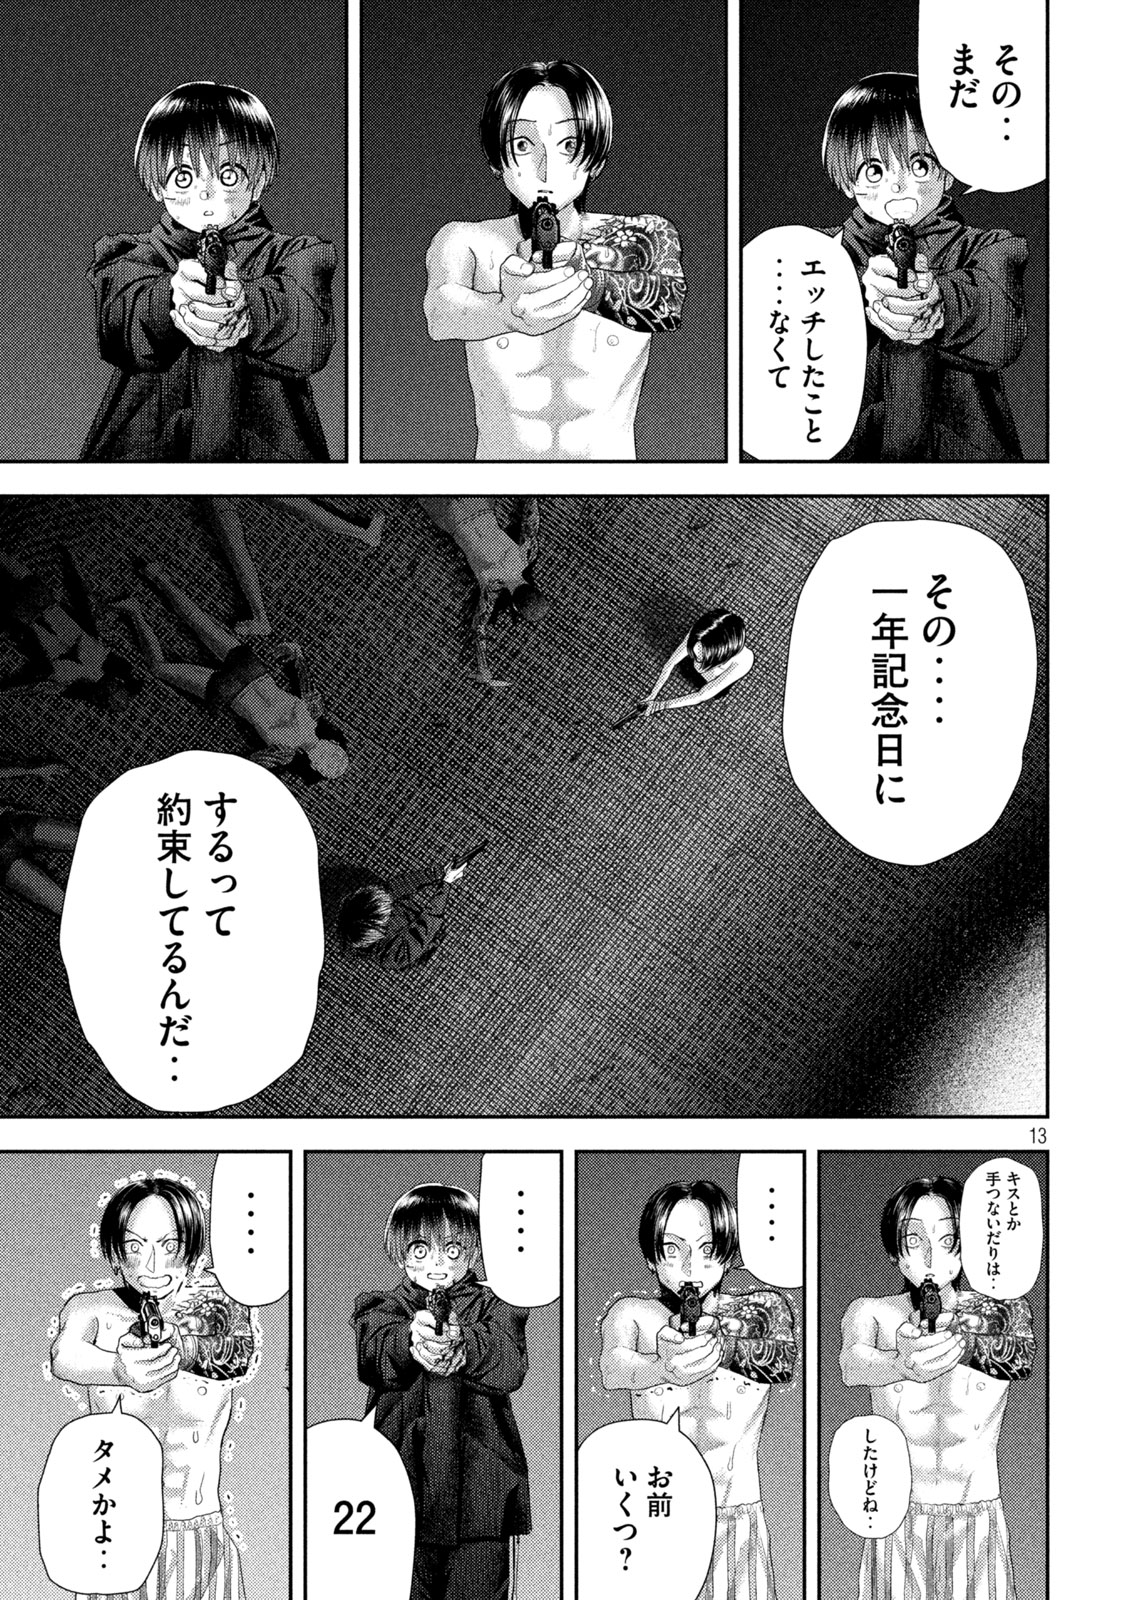 Nezumi no Koi - Chapter 33 - Page 13